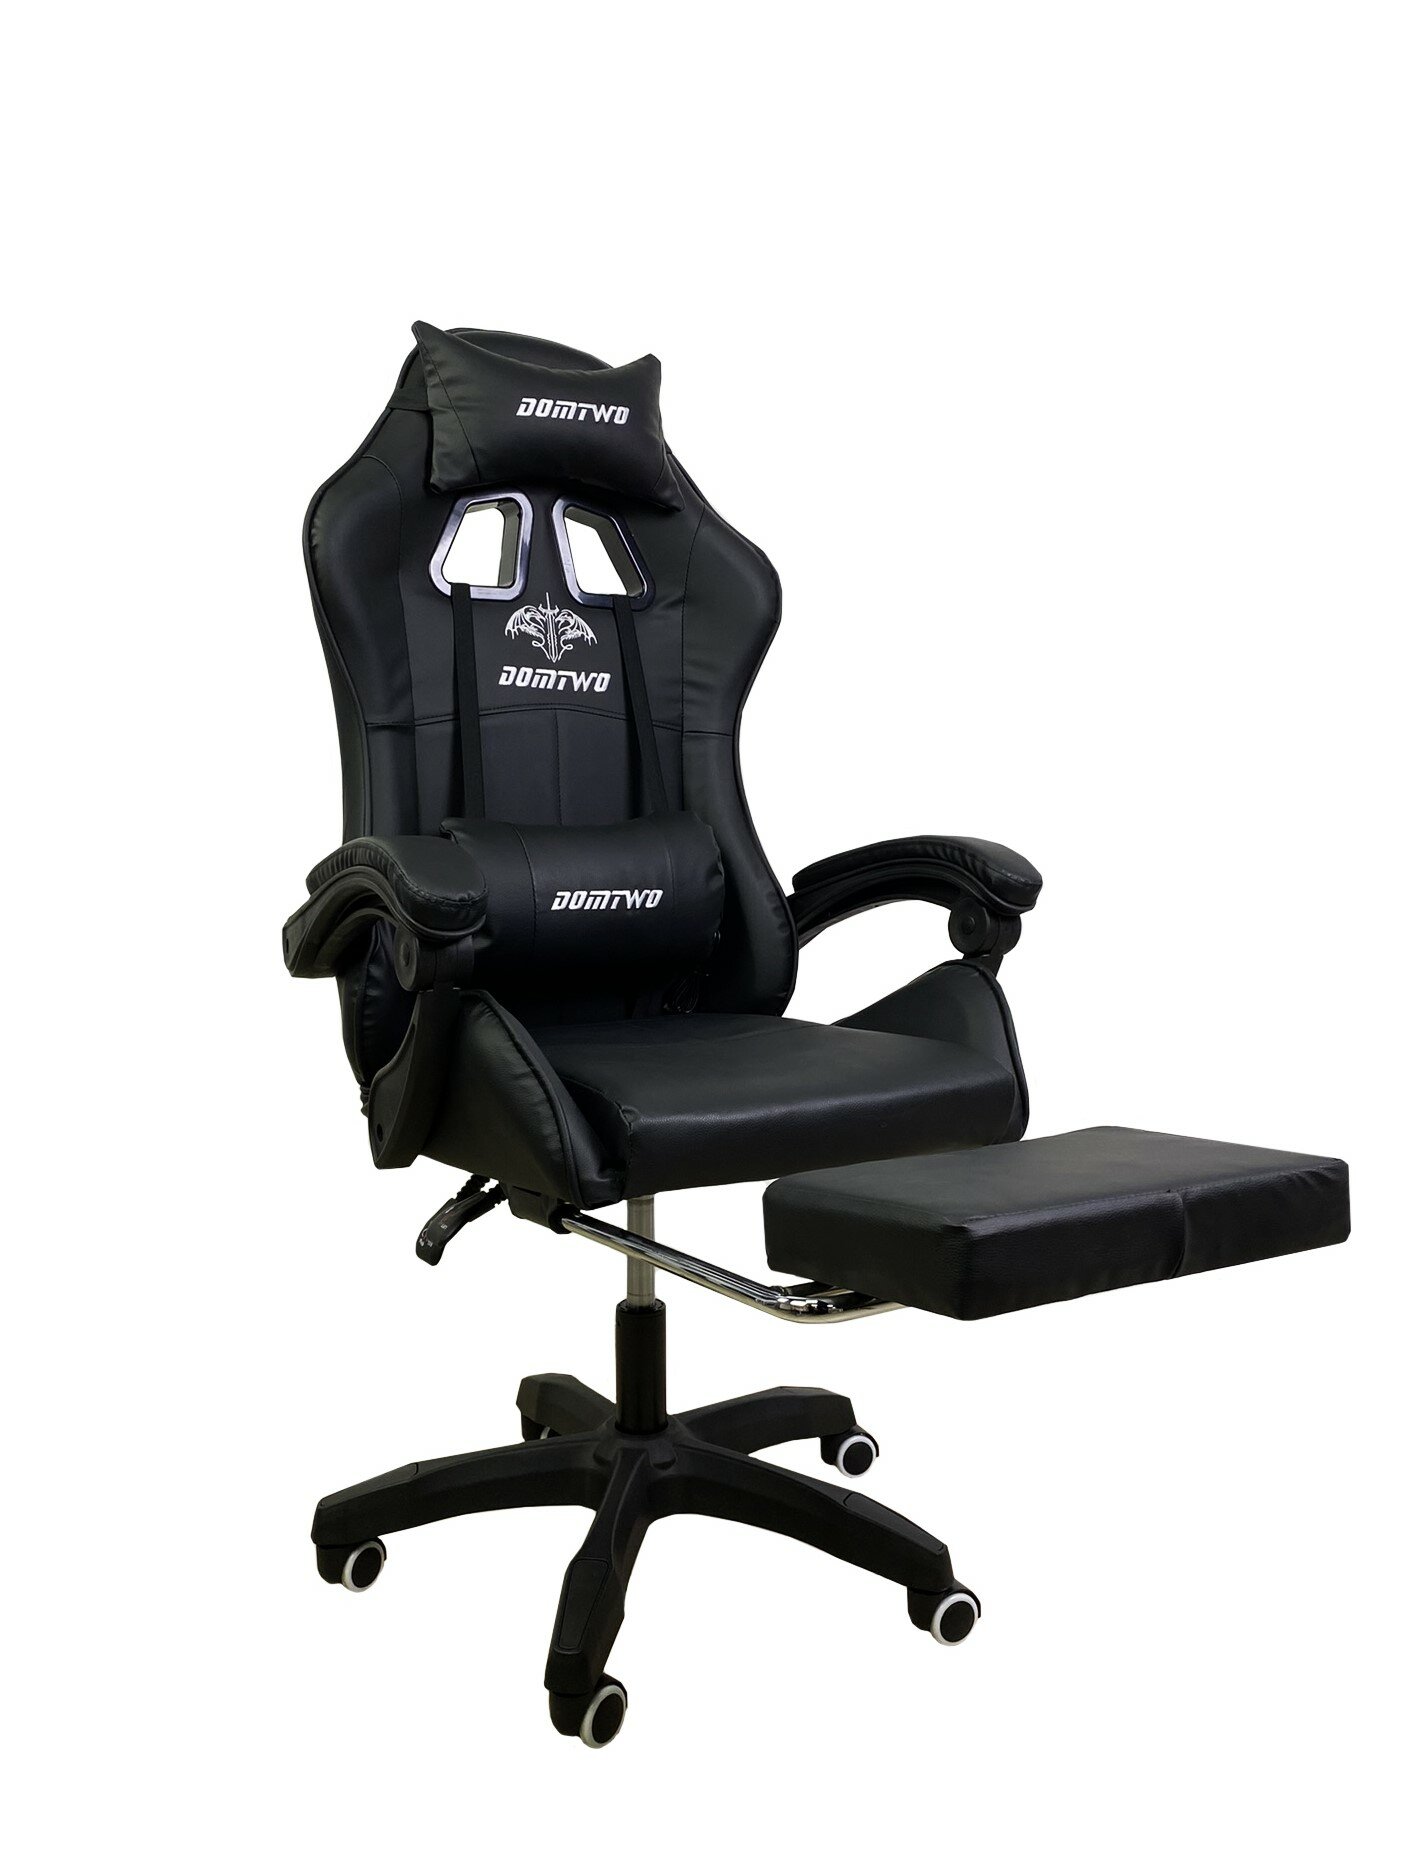 Компьютерное кресло Like Regal 206 игровое, обивка: искусственная кожа, цвет: черный